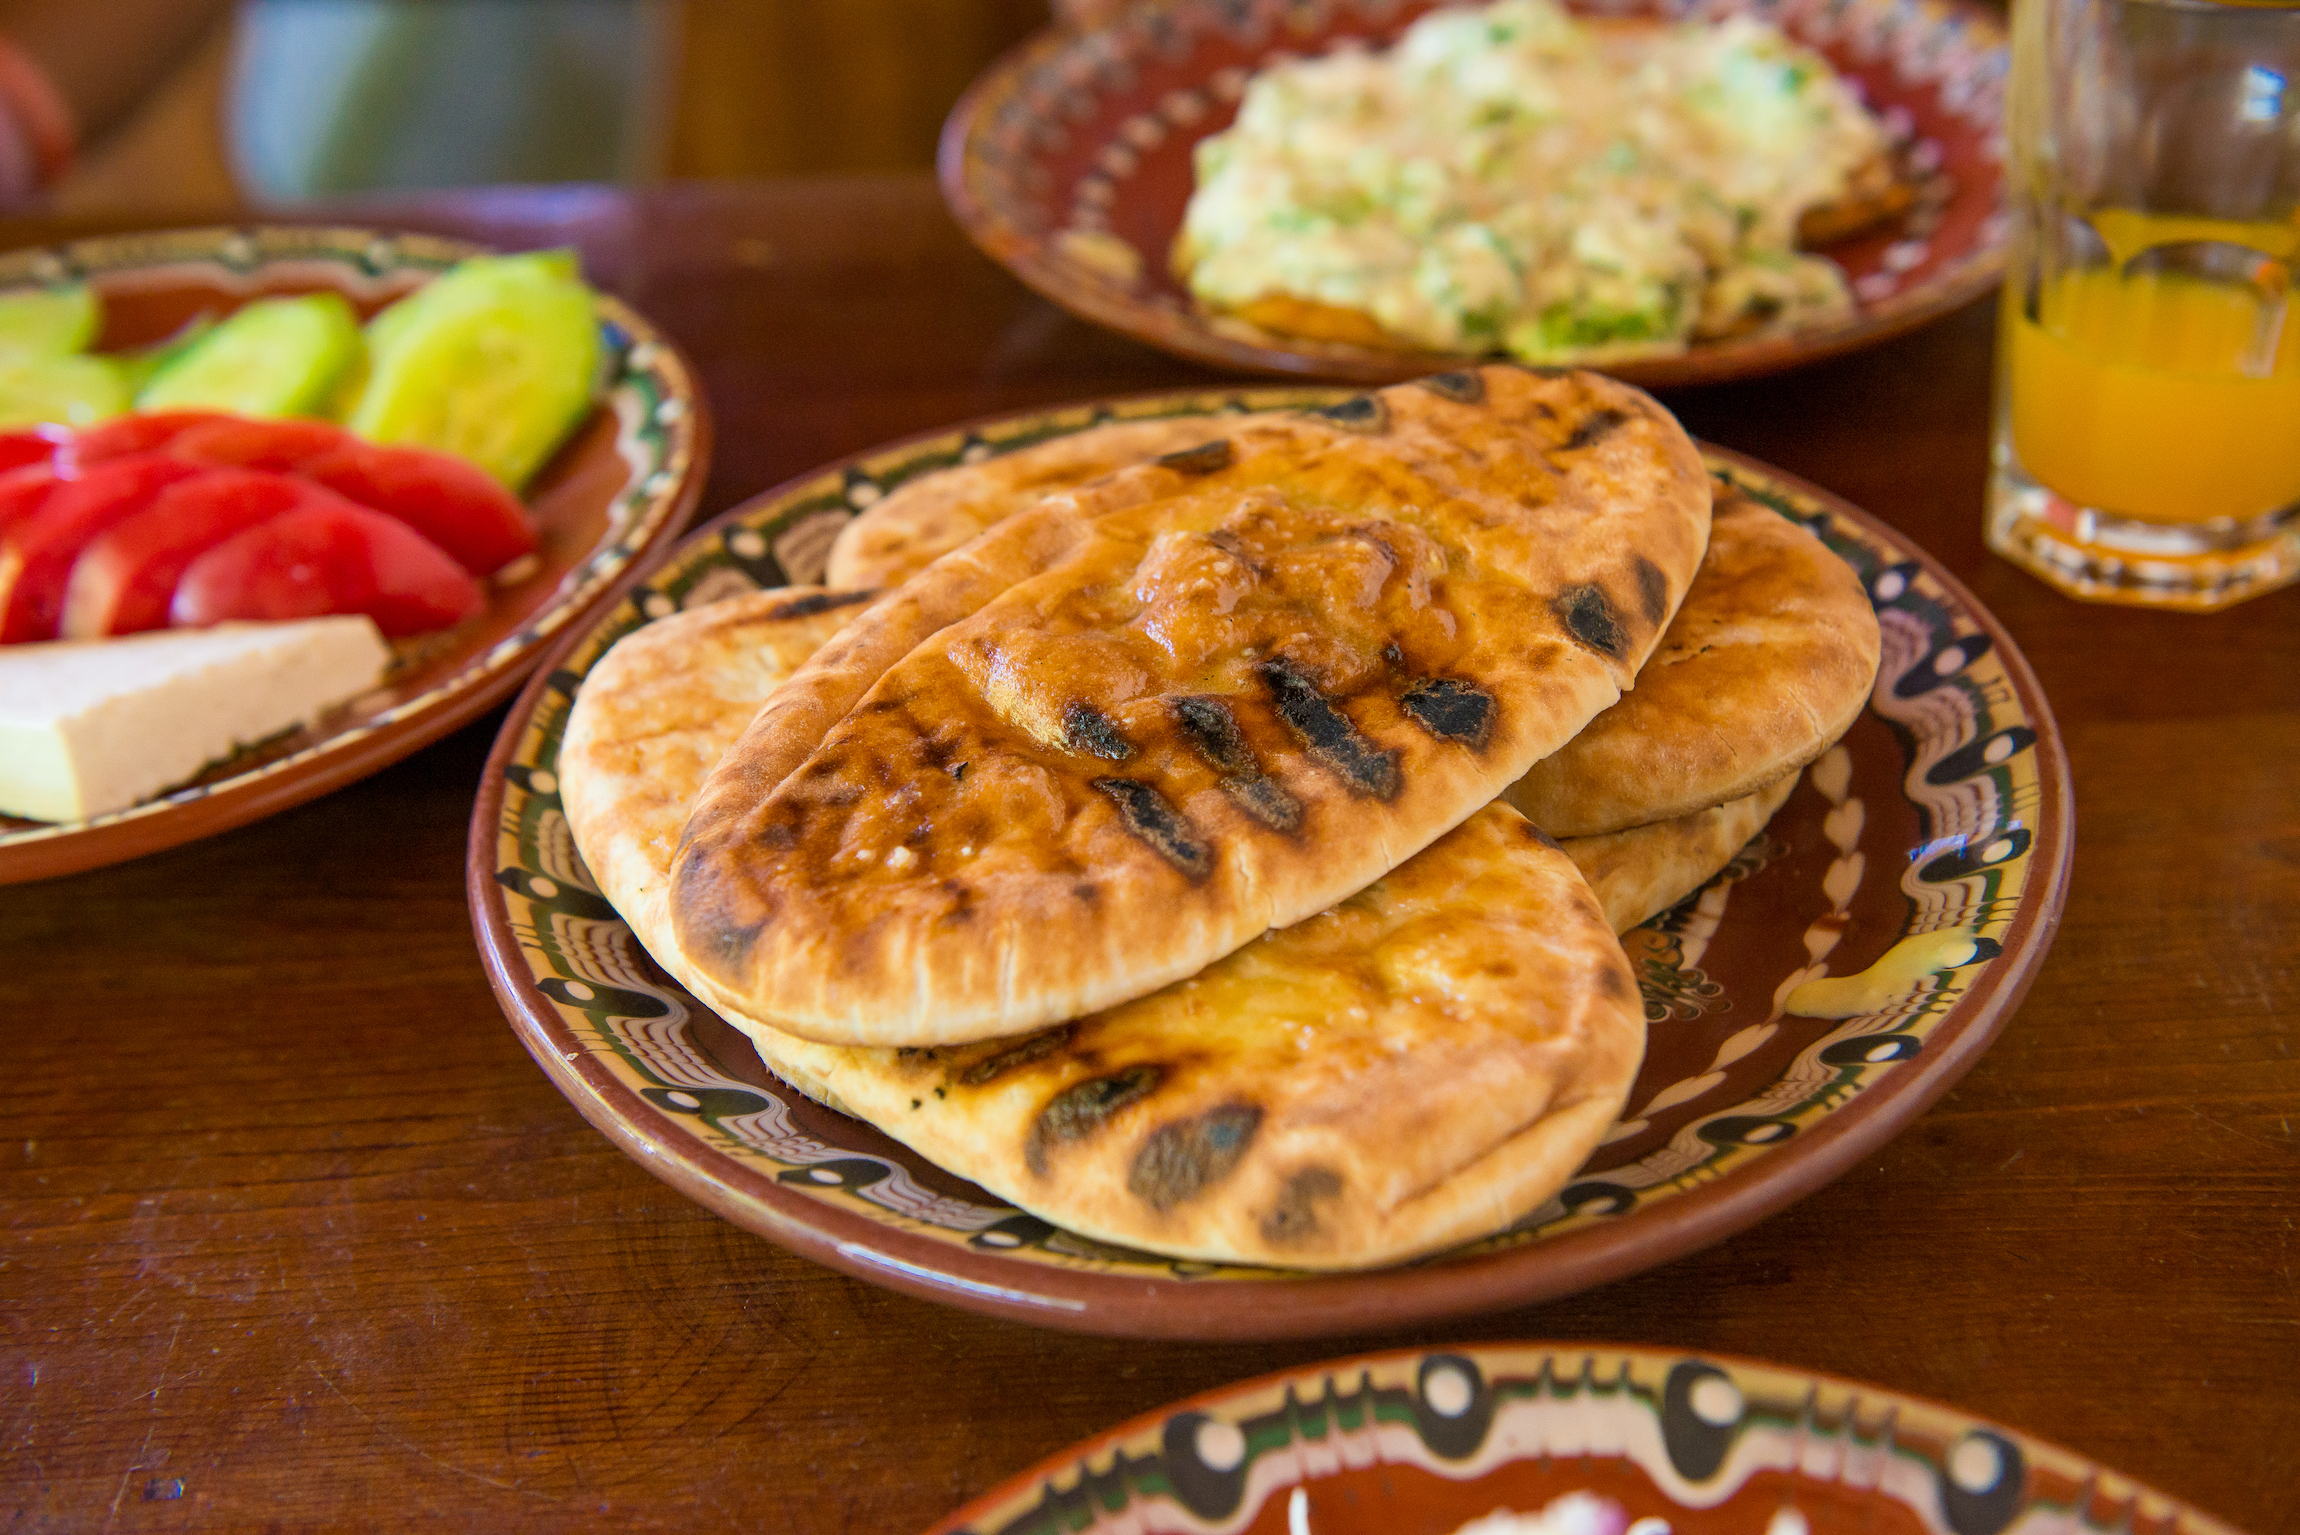 Kuchnia bułgarska. Tradycyjny bułgarski tutmanik - ręcznie robiony chleb z serem feta. Kolacja w restauracji